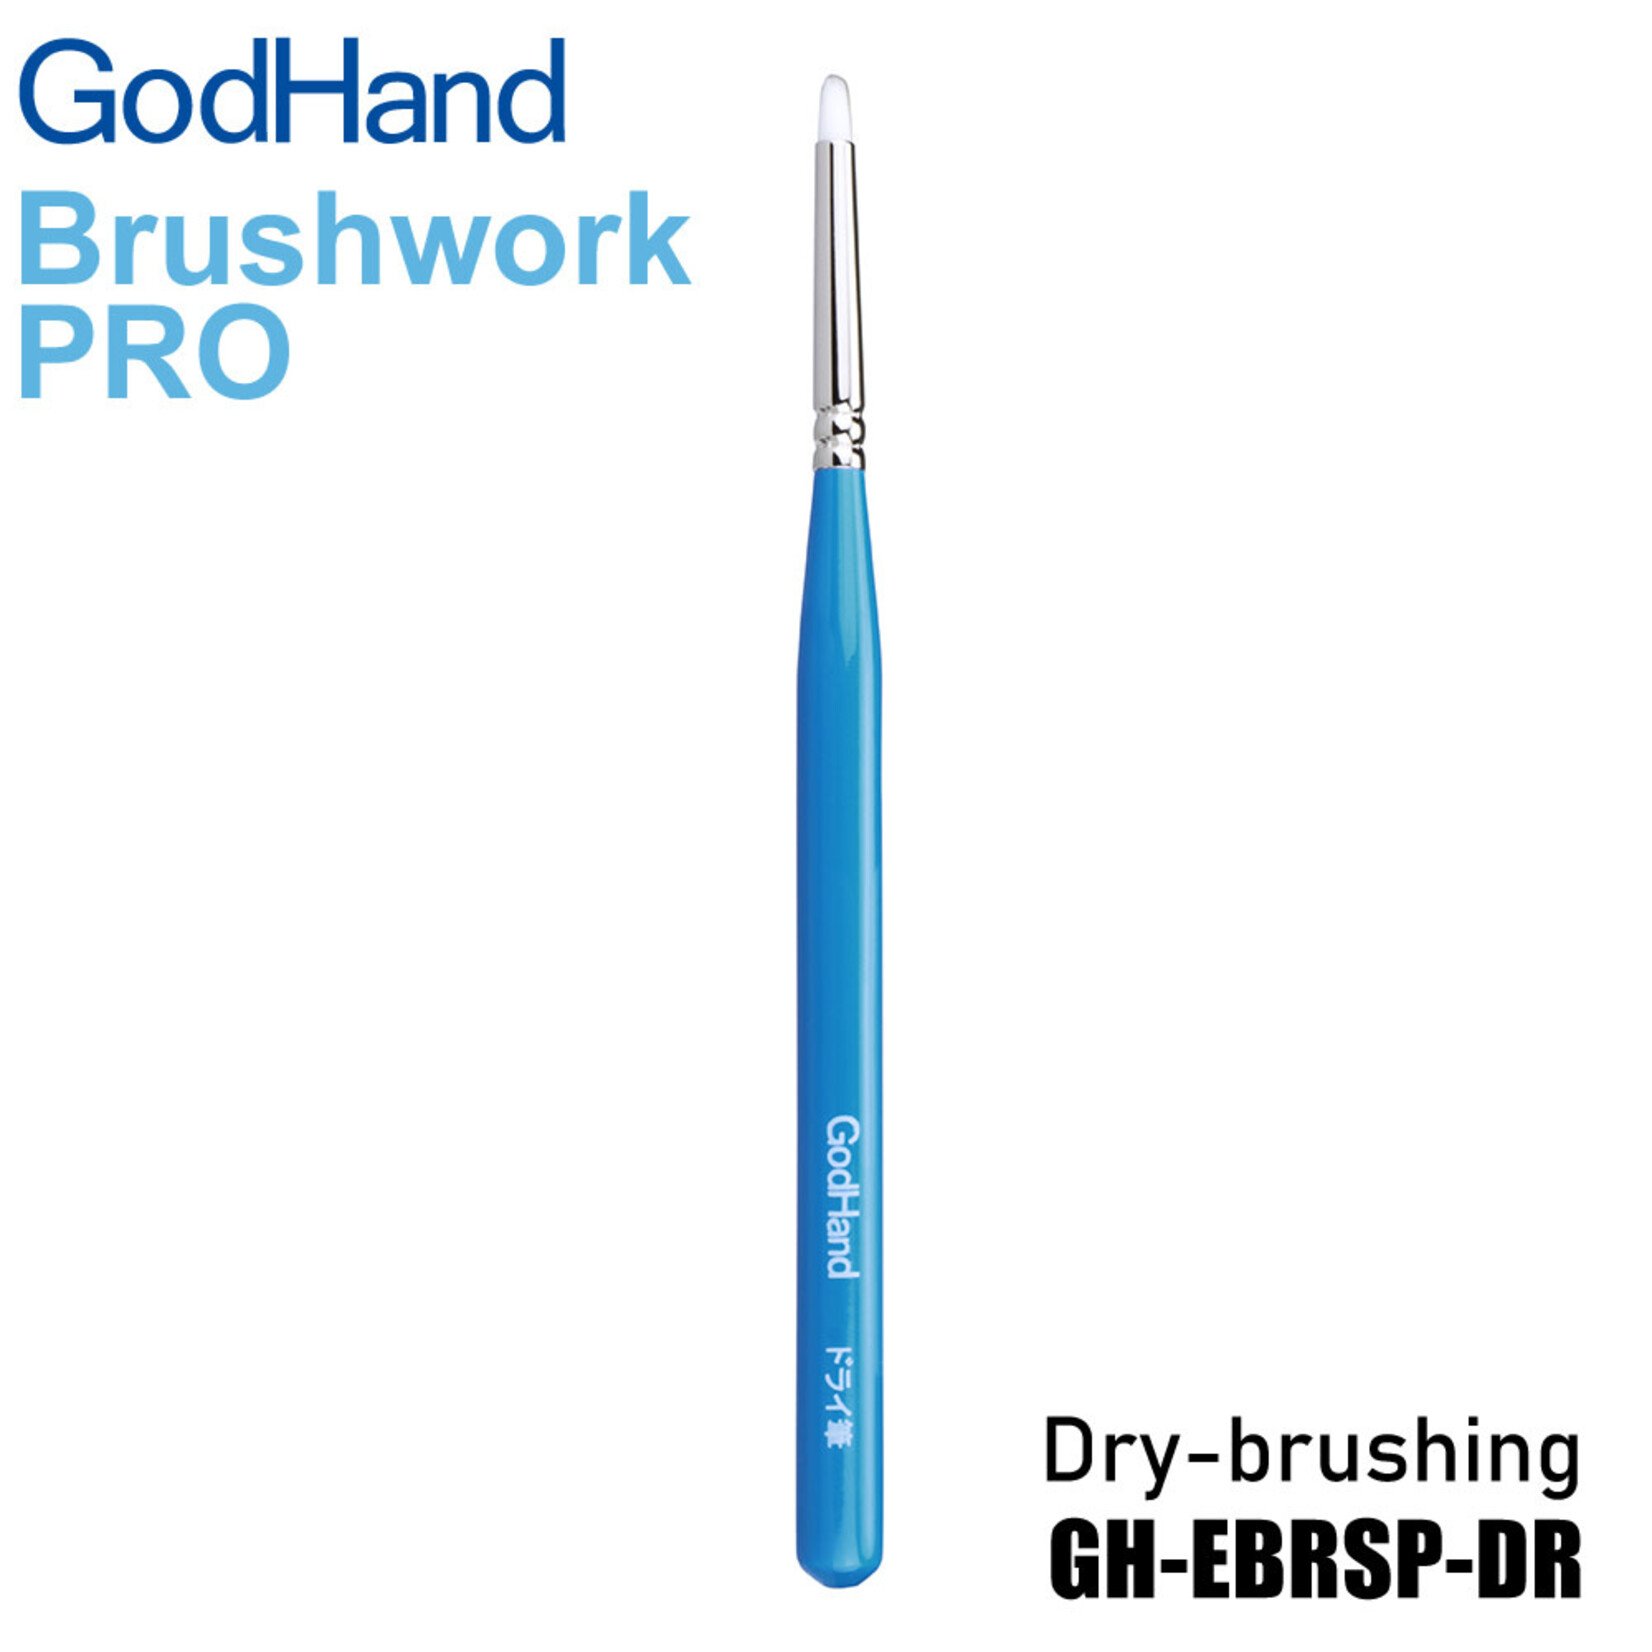 GodHand GH-EBRSP-DG GodHand Brushwork PRO Dry-brushing Extra Fine